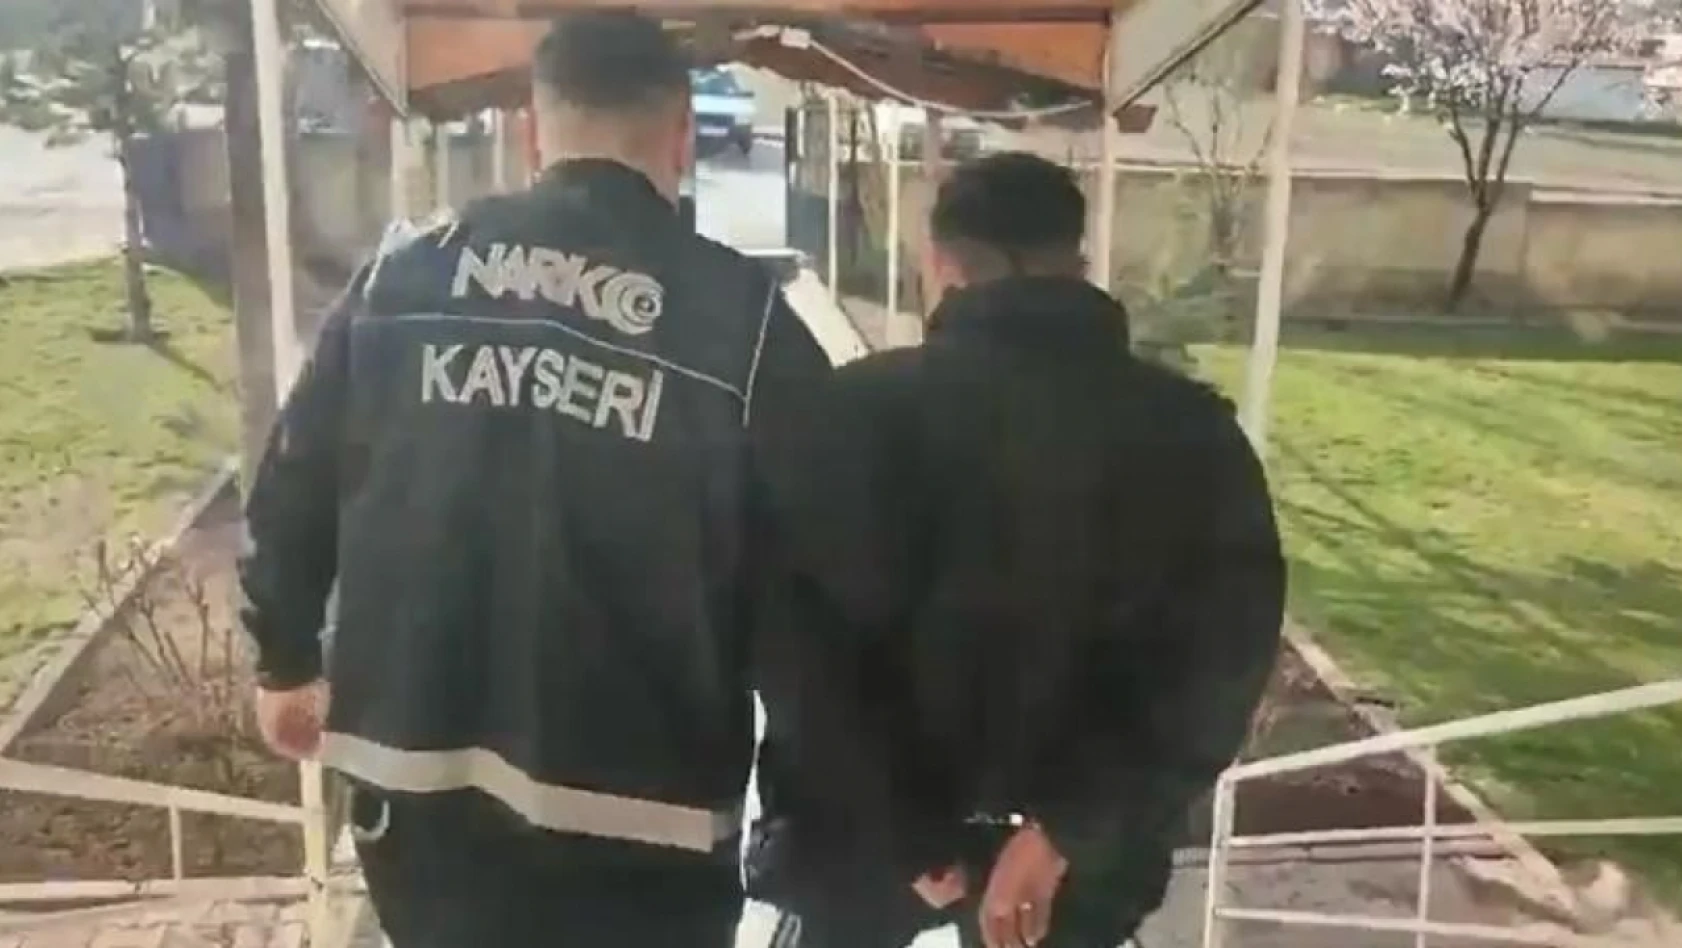 Kayseri'de Eş Zamanlı Operasyon - 11 Gözaltı Var!